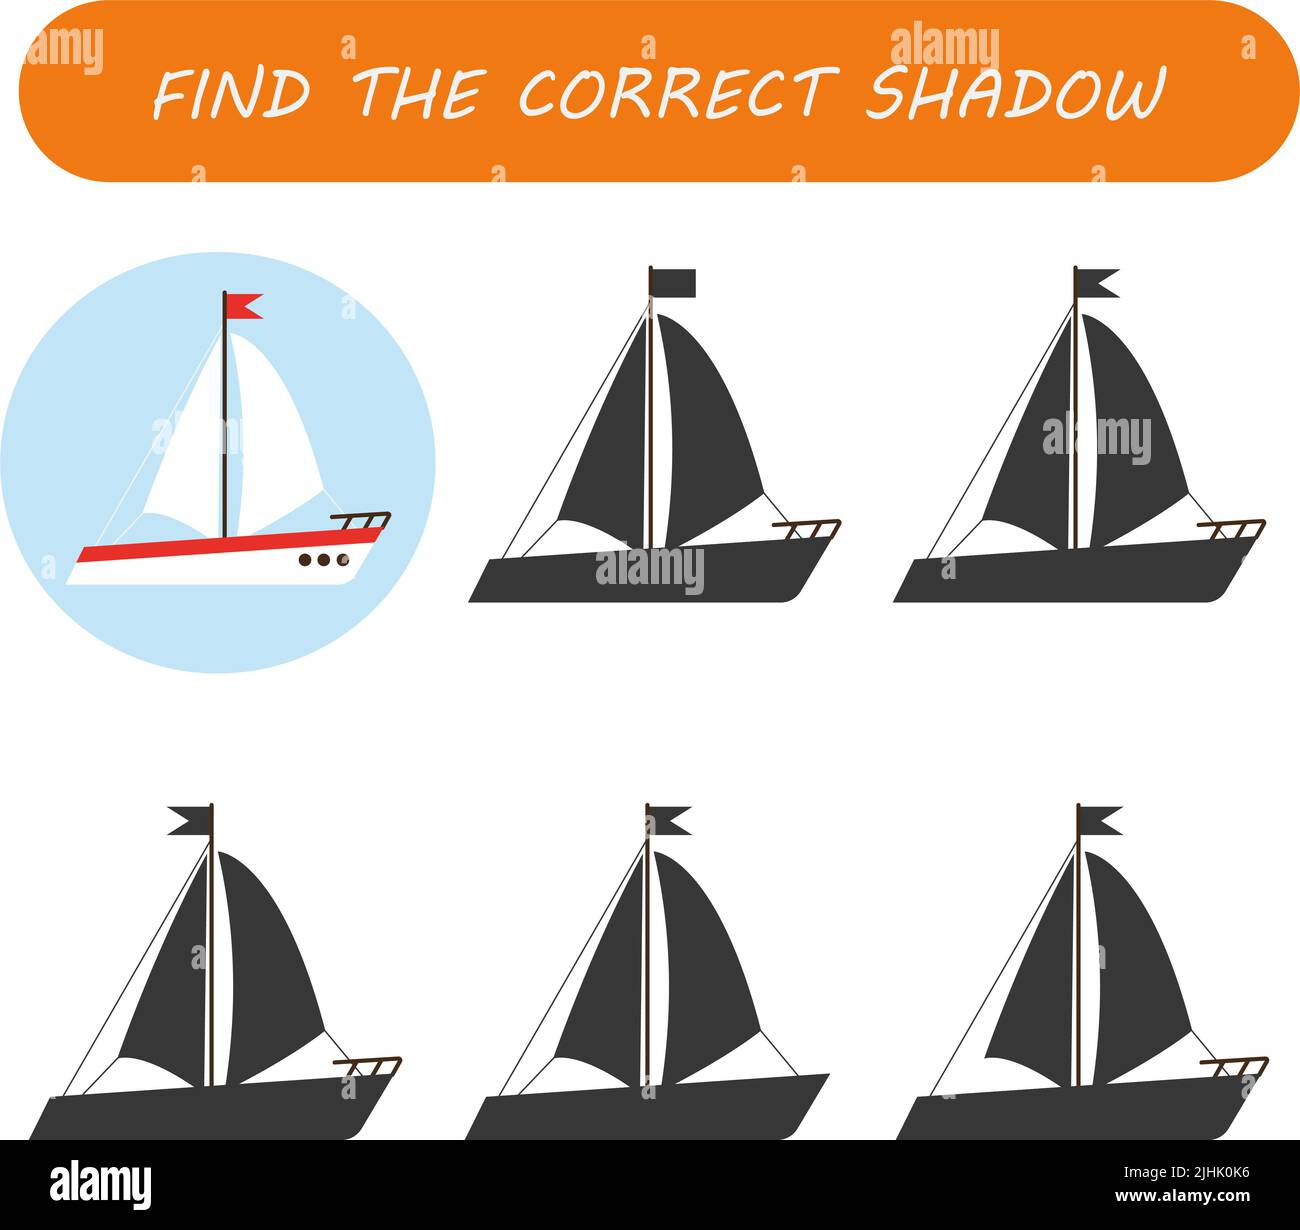 Trouvez la silhouette du bateau. Trouvez l'ombre correcte. Jeu éducatif pour les enfants. Banque D'Images